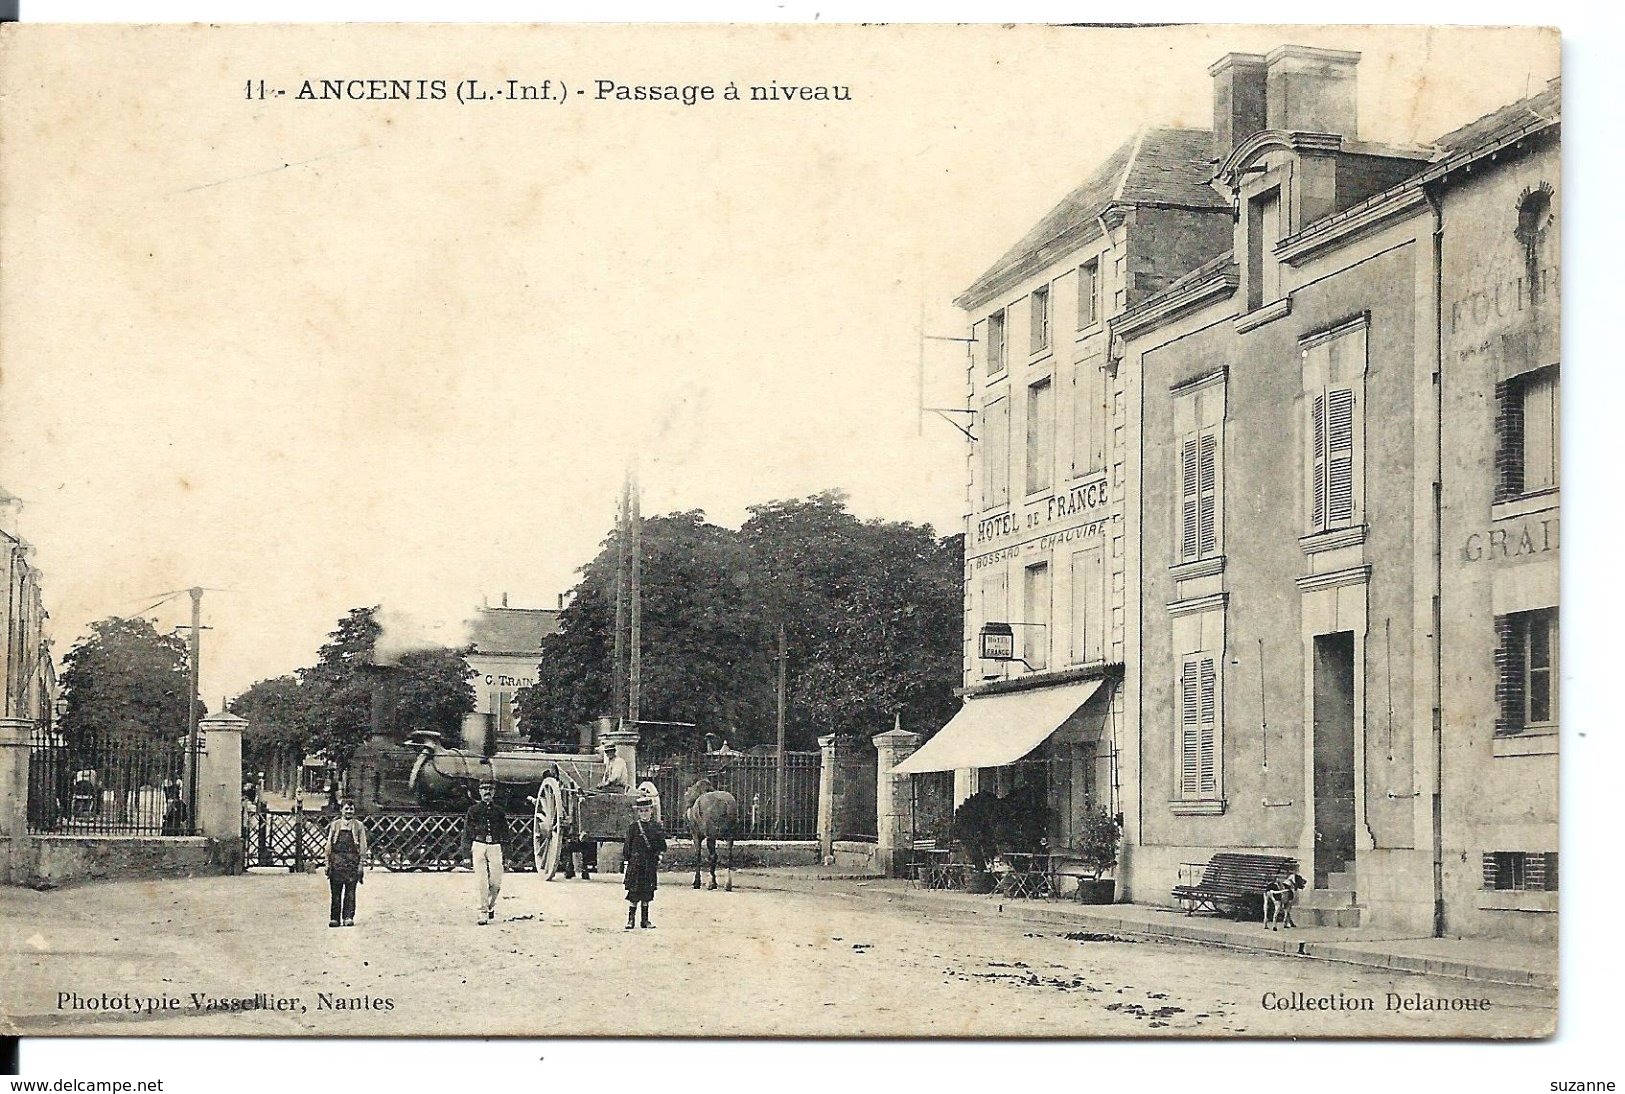 ANCENIS - Le TRAIN - Locomotive Au Passage à Niveau - Hôtel De France (Vassellier Nantes Vers 1914) - Rare - Ancenis